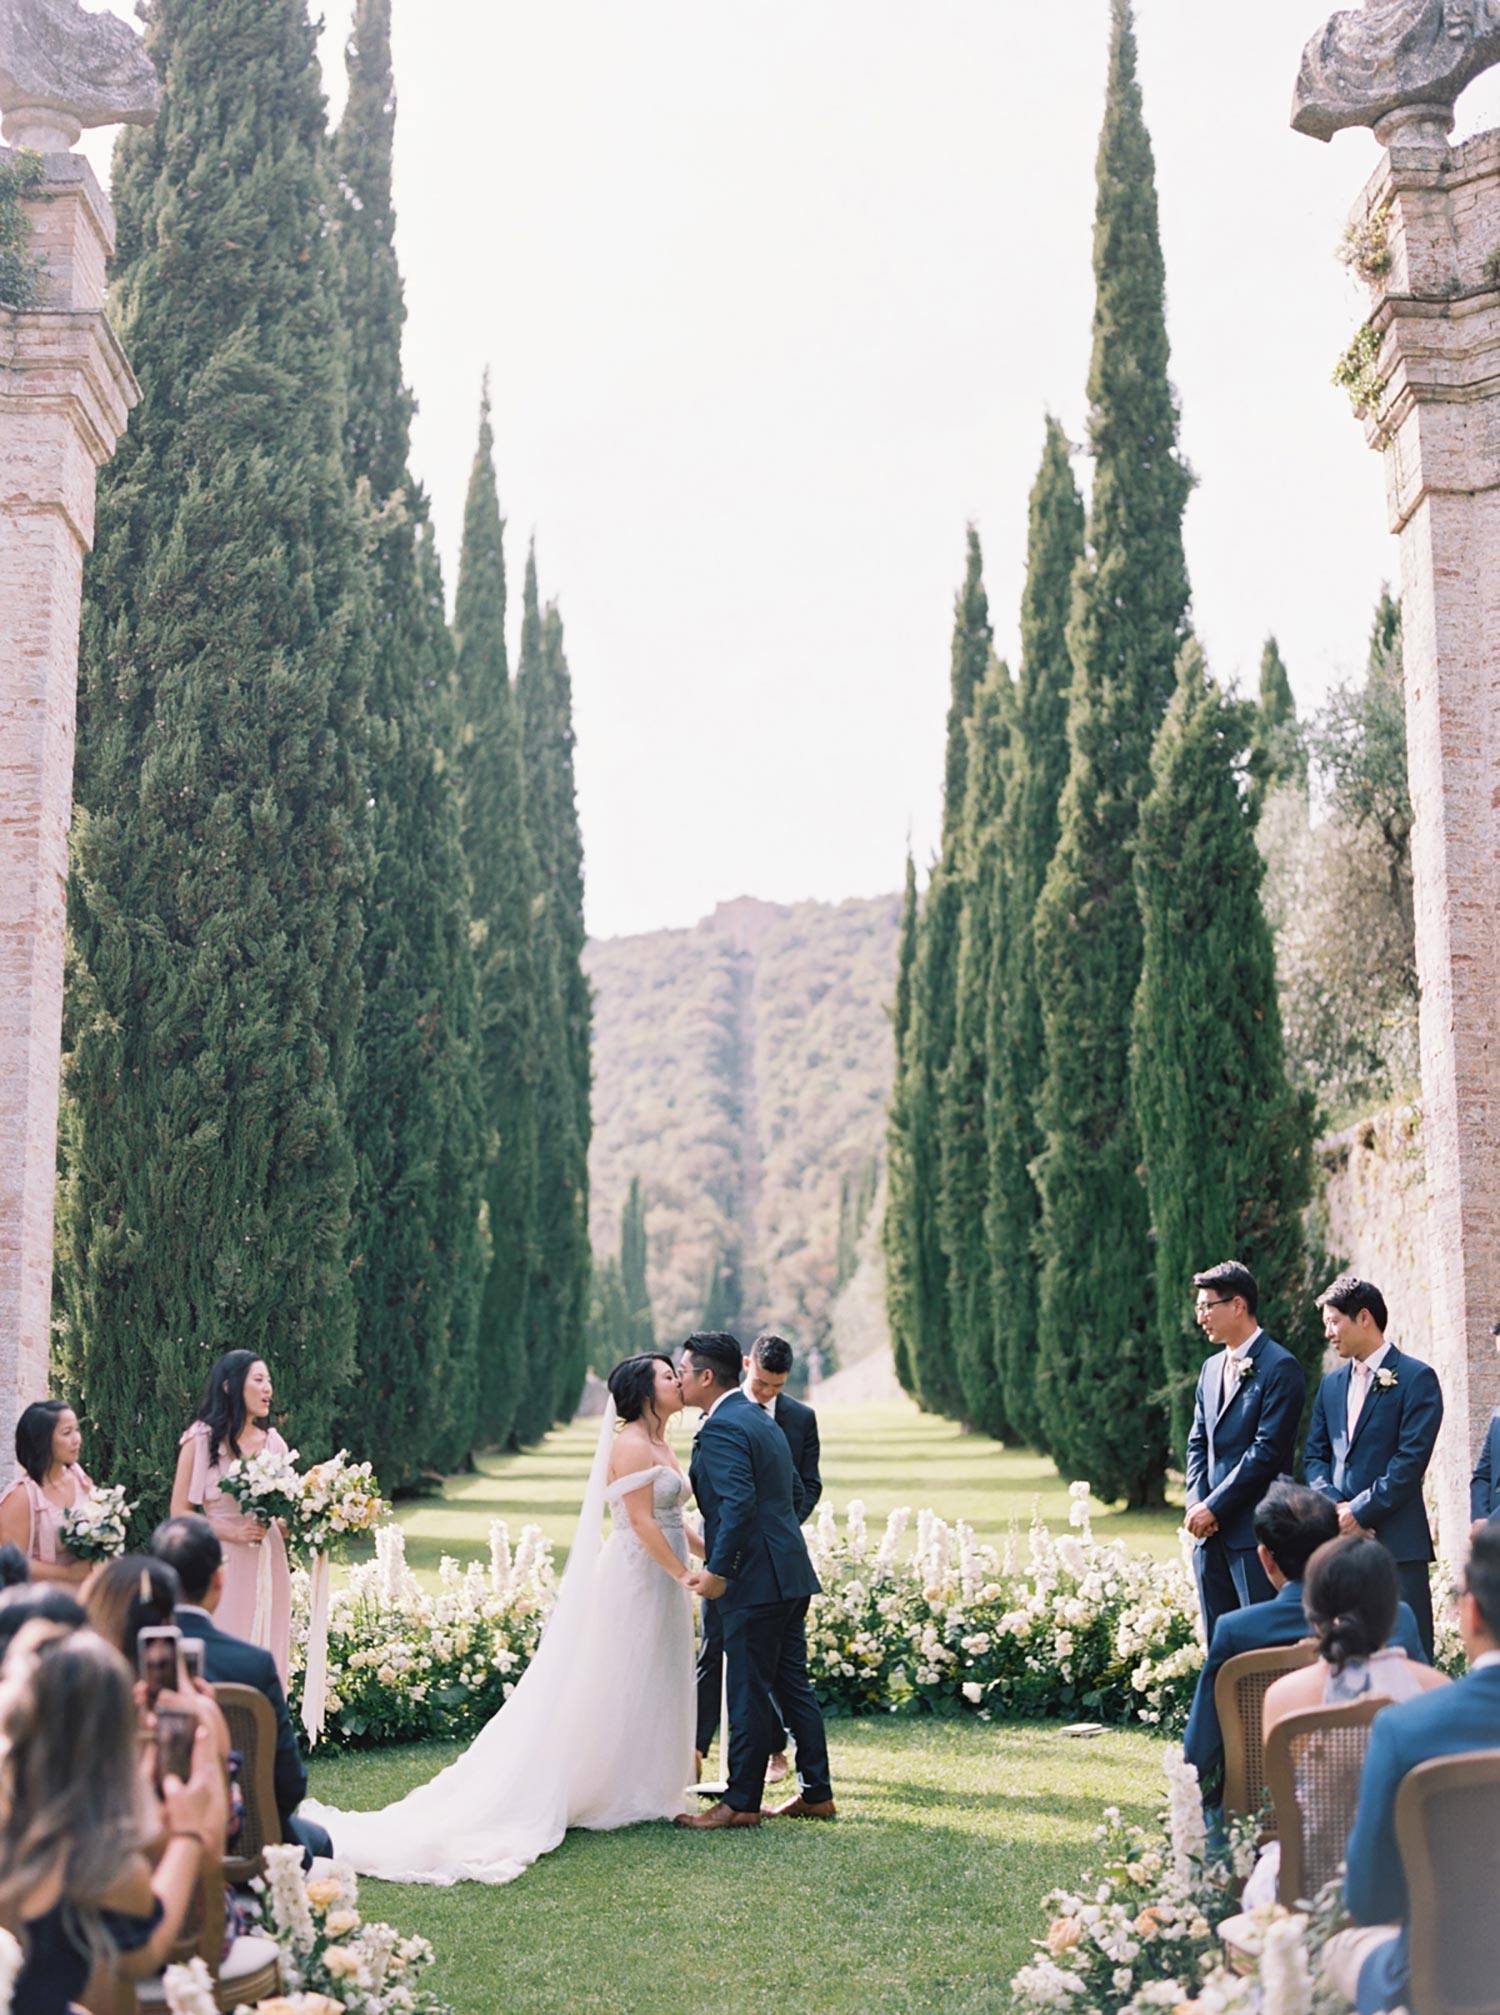 Cérémonie de mariage dans une villa italienne avec des cyprès, des chaises à dossier en rotin et une allée luxuriante de fleurs vertes et blanches